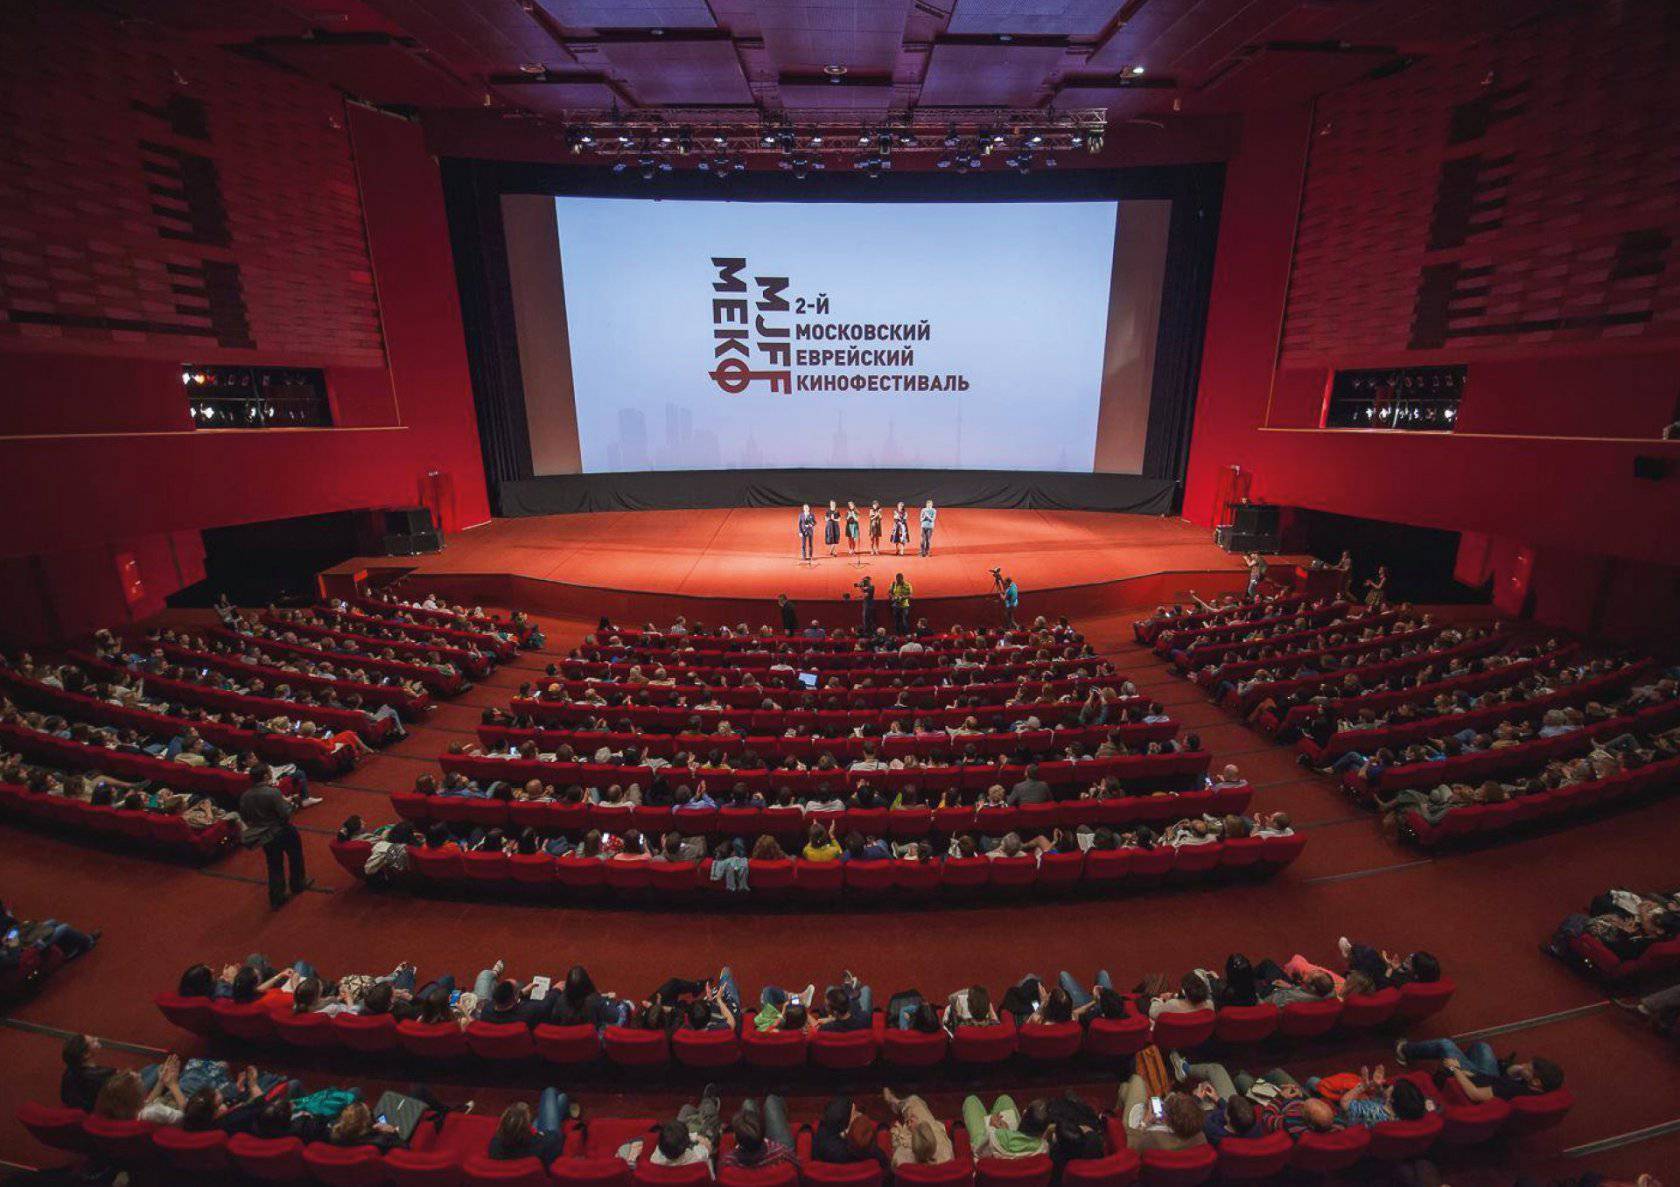 معتبرترین جشنواره های بین المللی فیلم در جهان کدامند؟